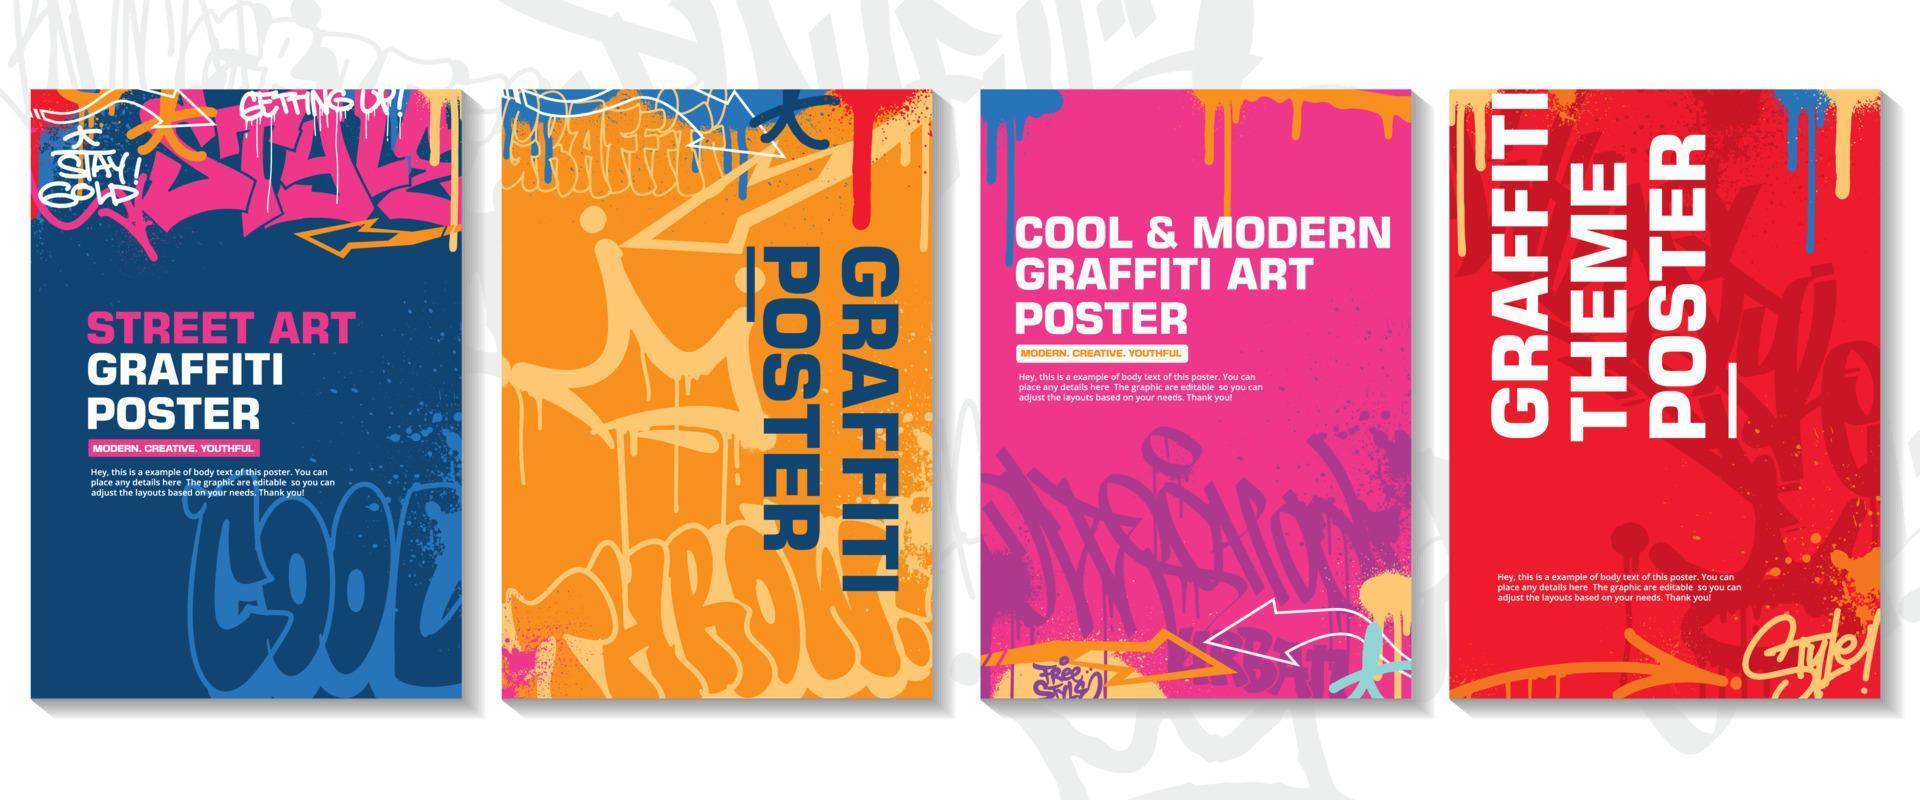 affiche d'art graffiti moderne ou conception de flyer avec des étiquettes colorées, vomir. vecteur d'illustration graffiti abstrait dessiné à la main dans le thème de l'art de la rue